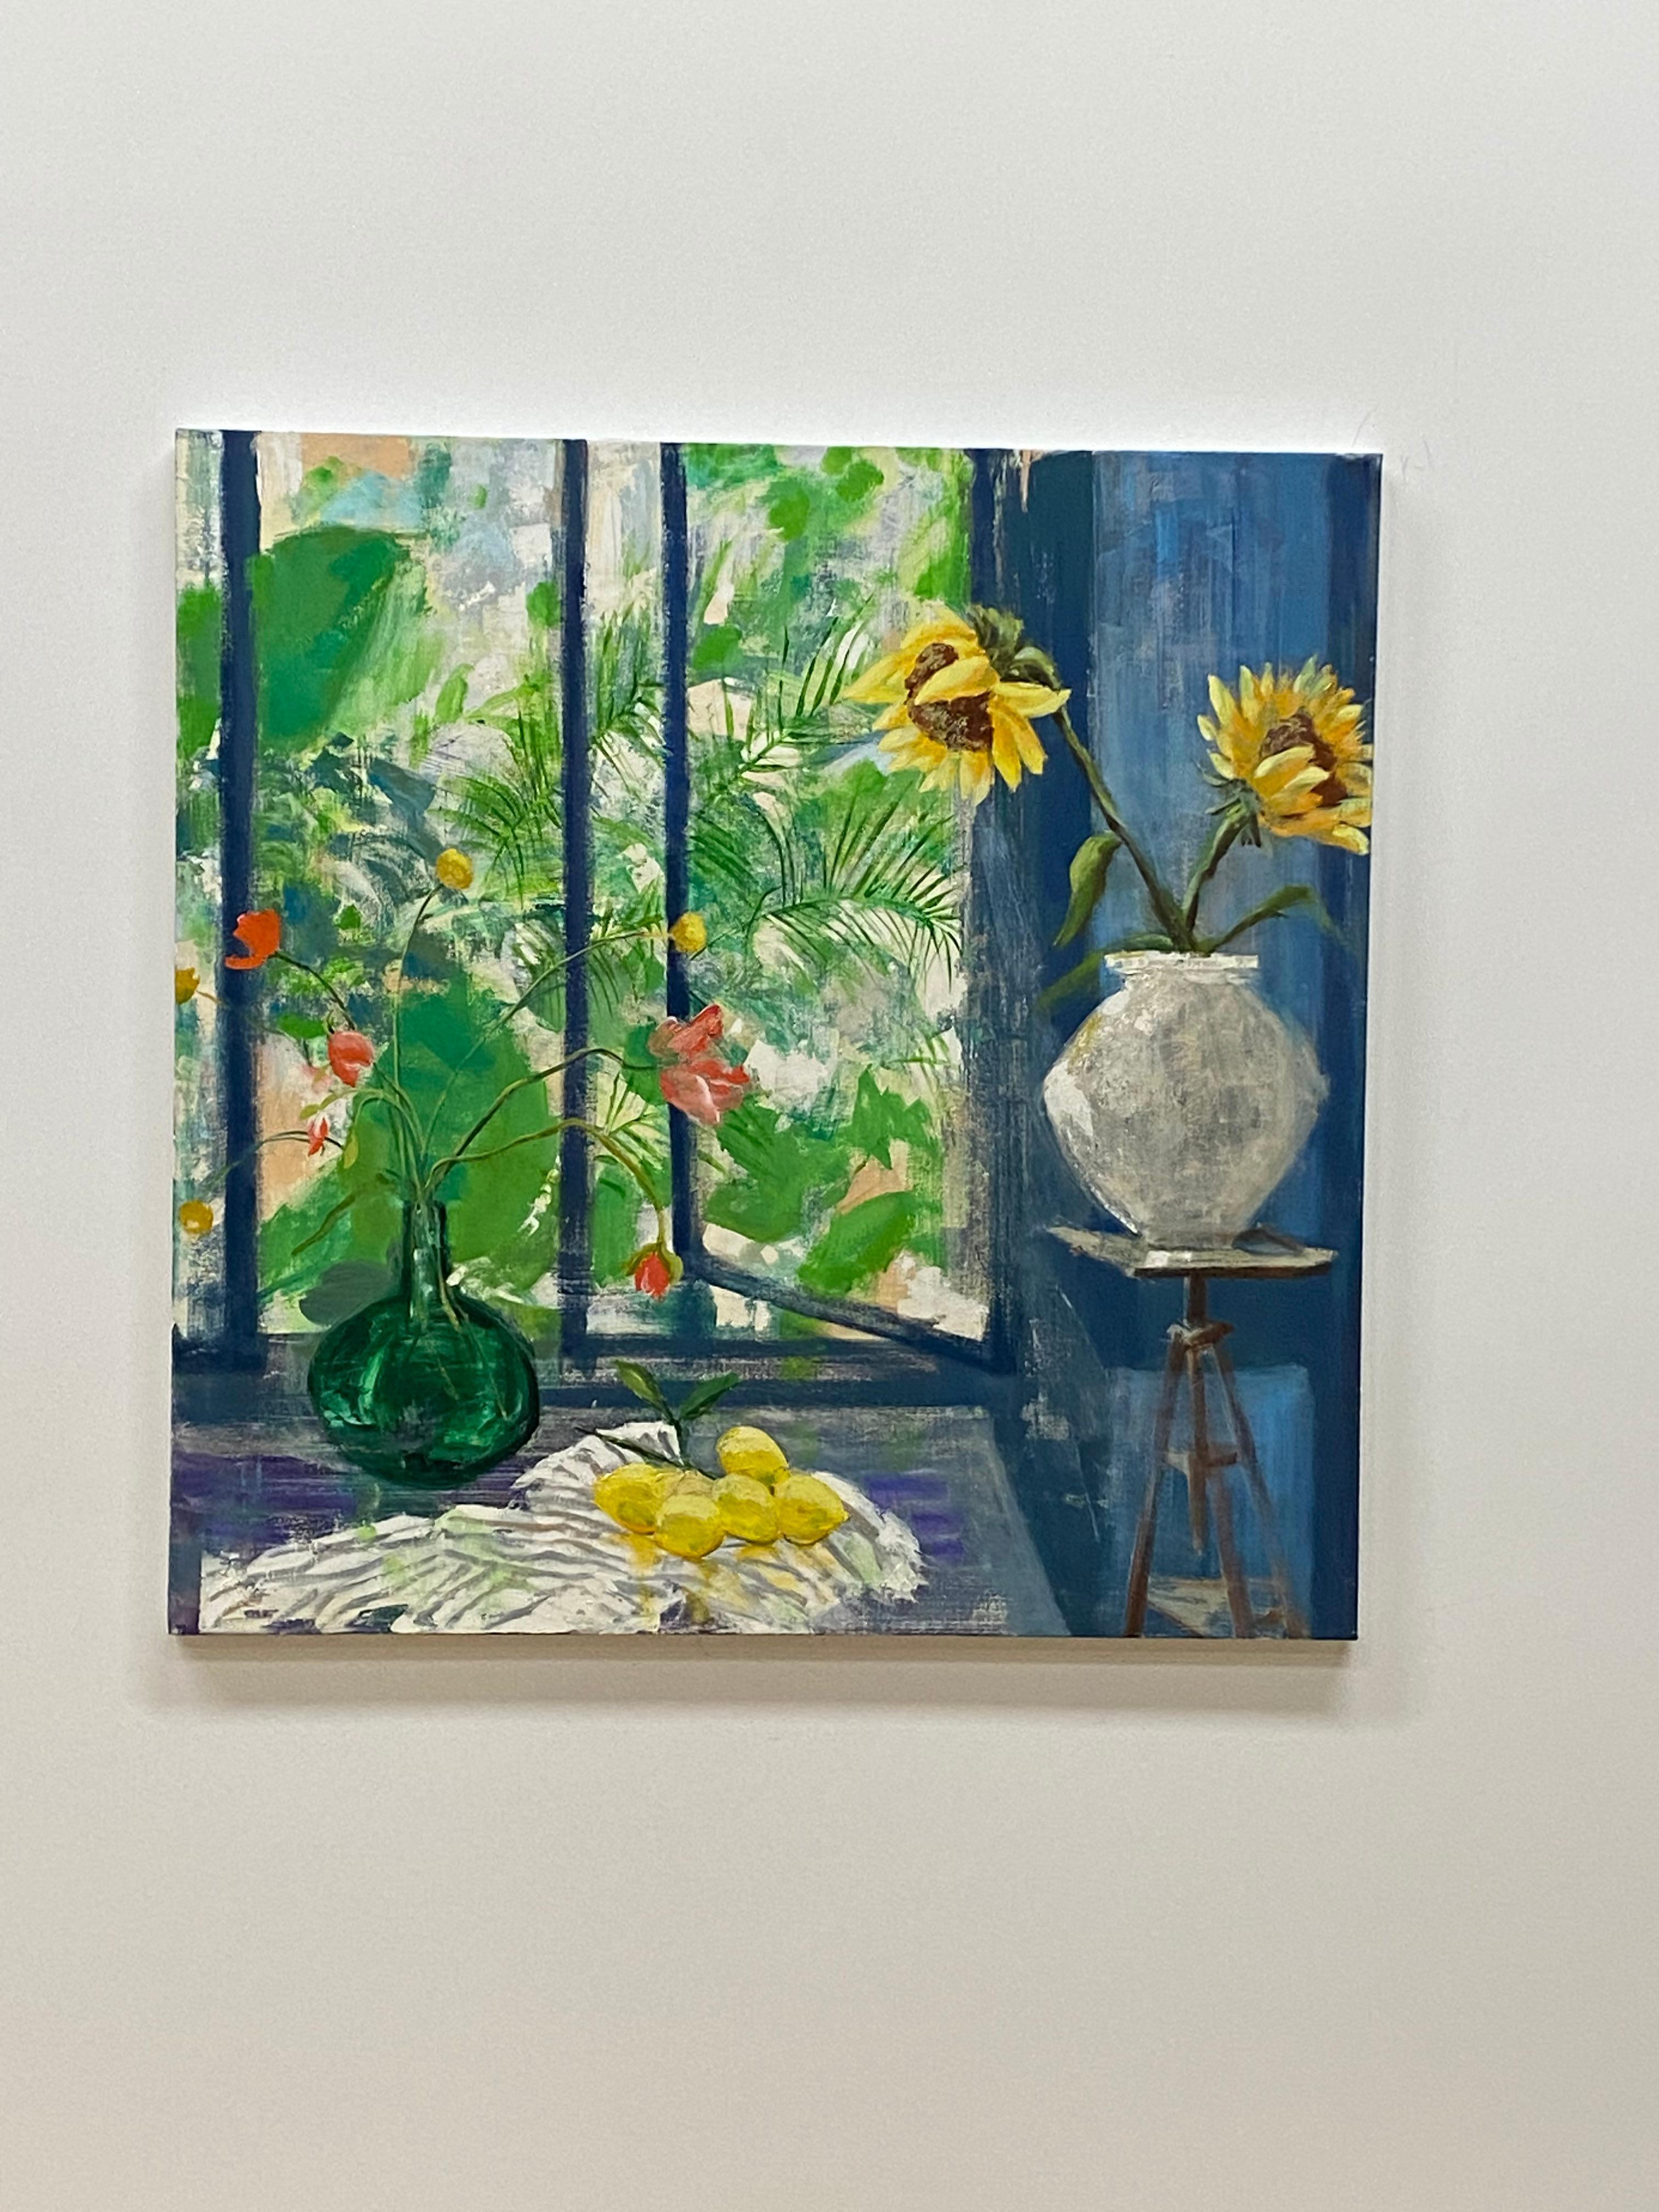 Arezzo-Sonnen, gelbe Sonnenblumen, Fenster, blaues botanisches Stillleben im Innenraum (Zeitgenössisch), Painting, von Melanie Parke